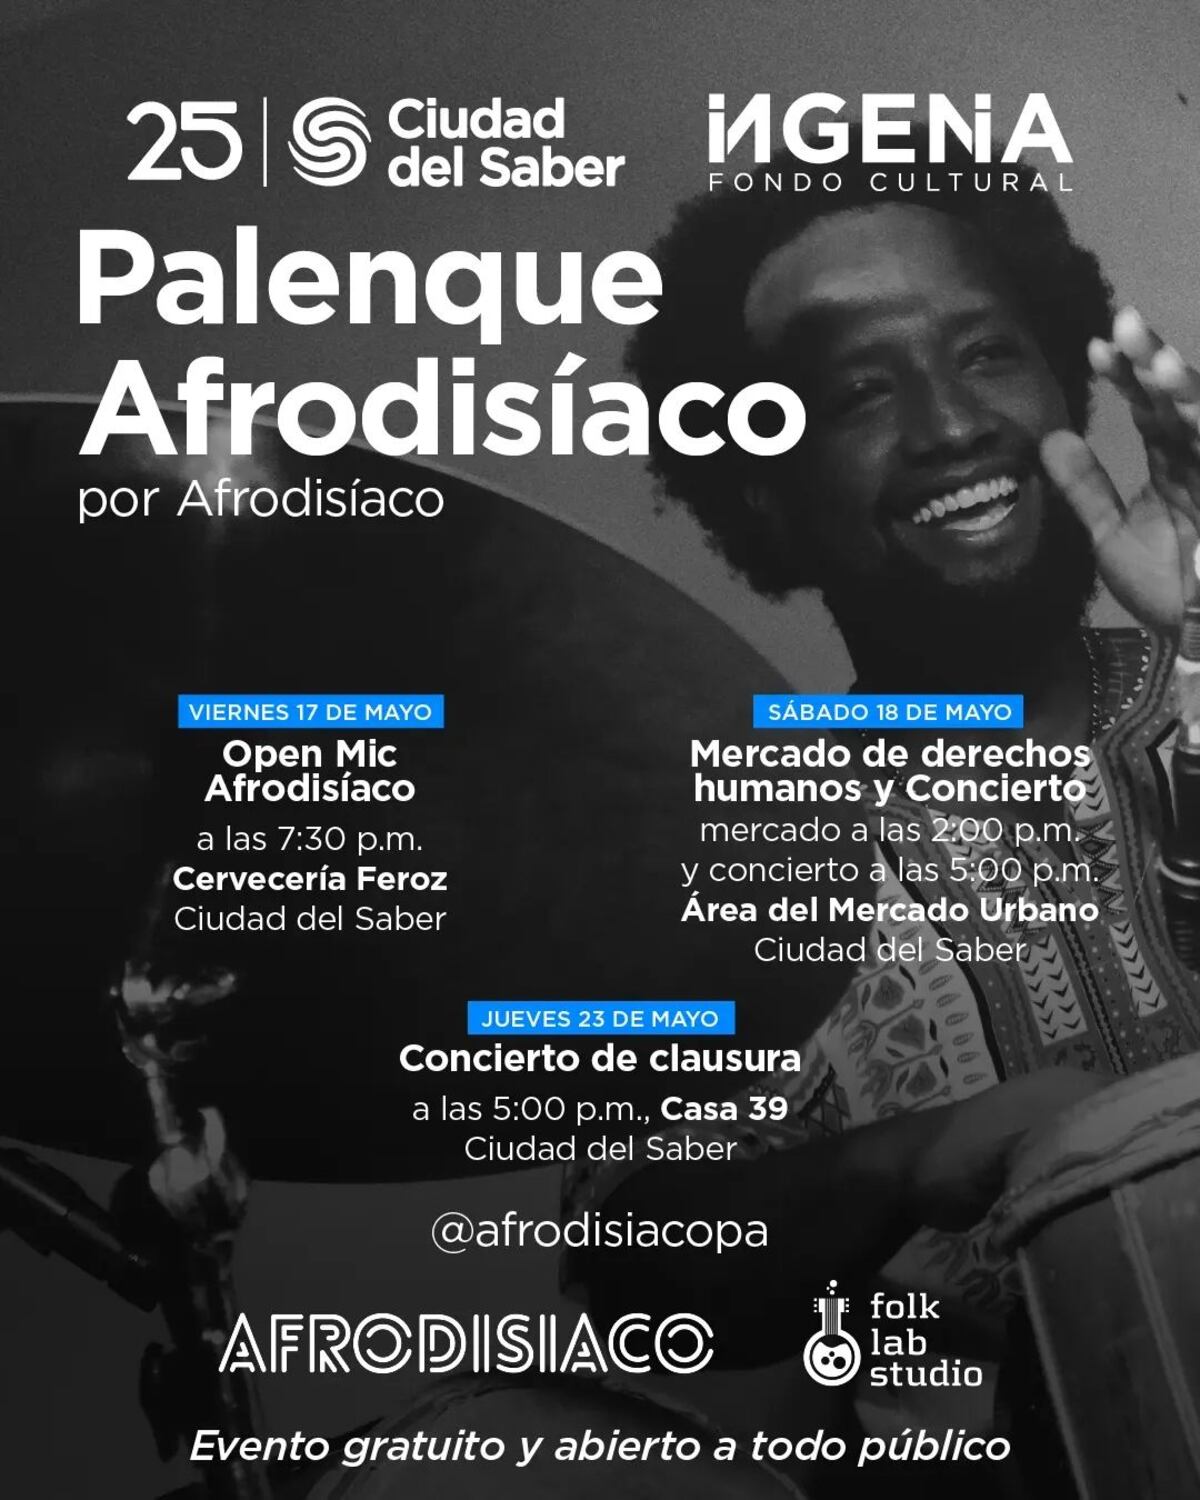 Miroslava Herrera y Tatiana Ríos presentan proyecto Palenque Afrodisiaco en Ciudad del Saber